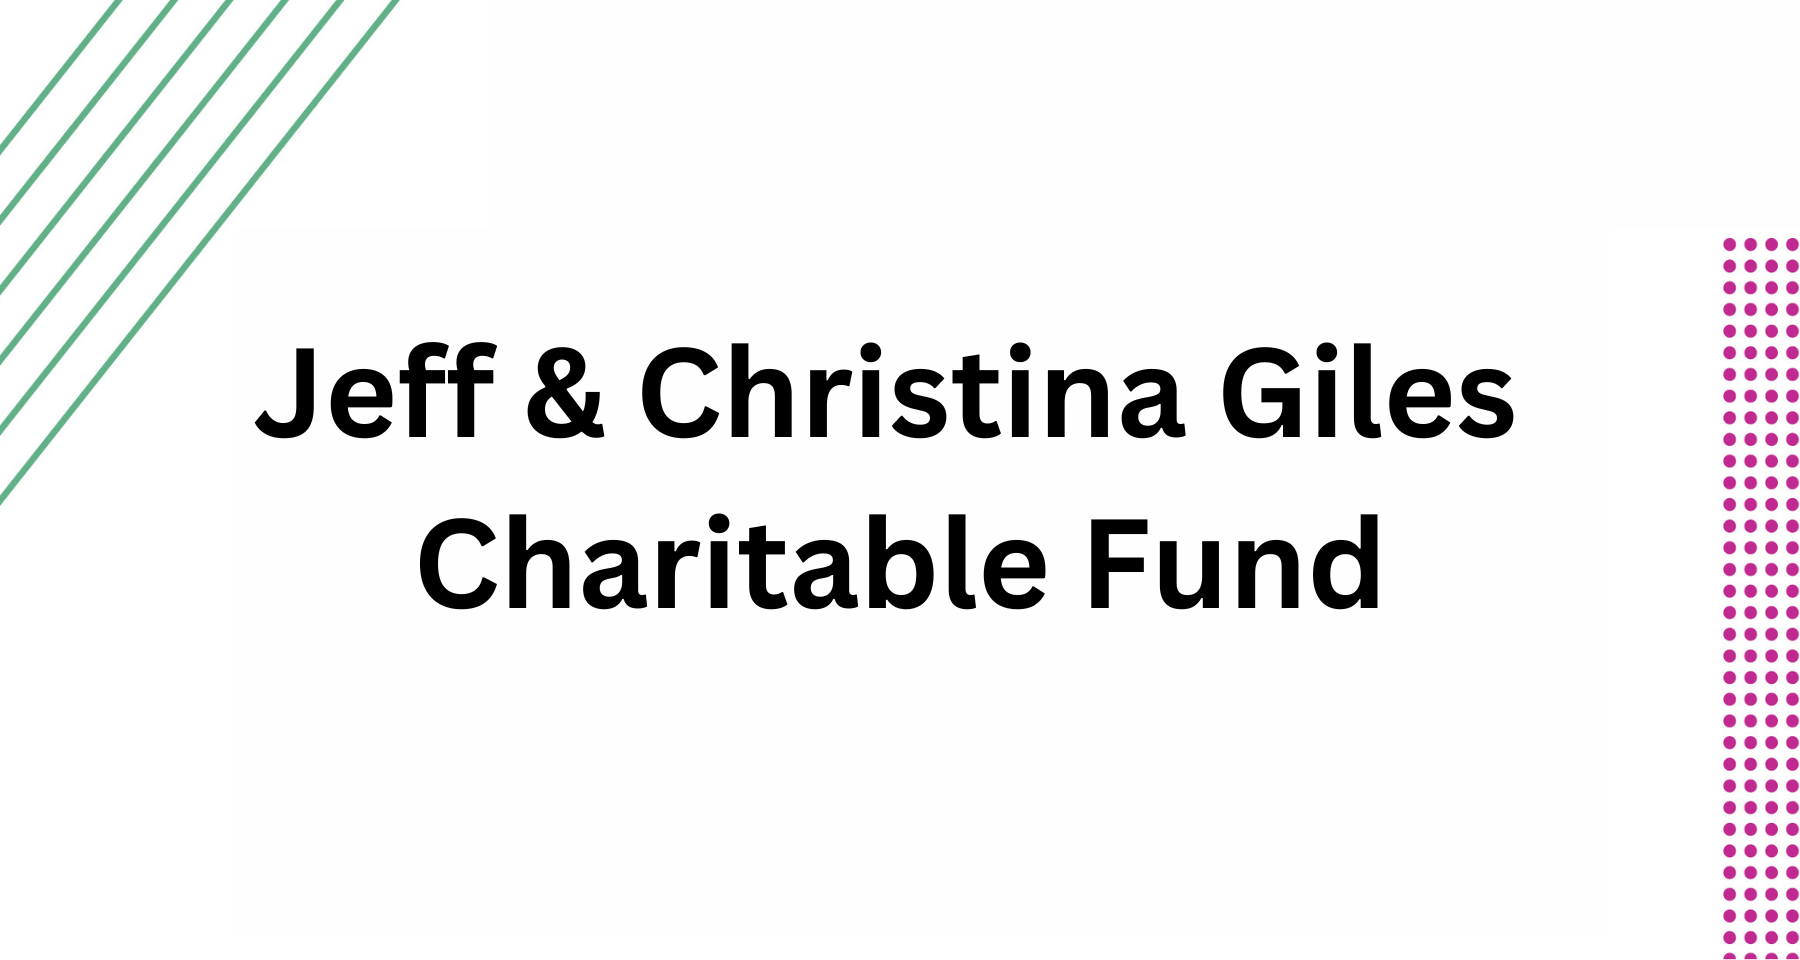 Jeff & Christina Giles Charitable Fund